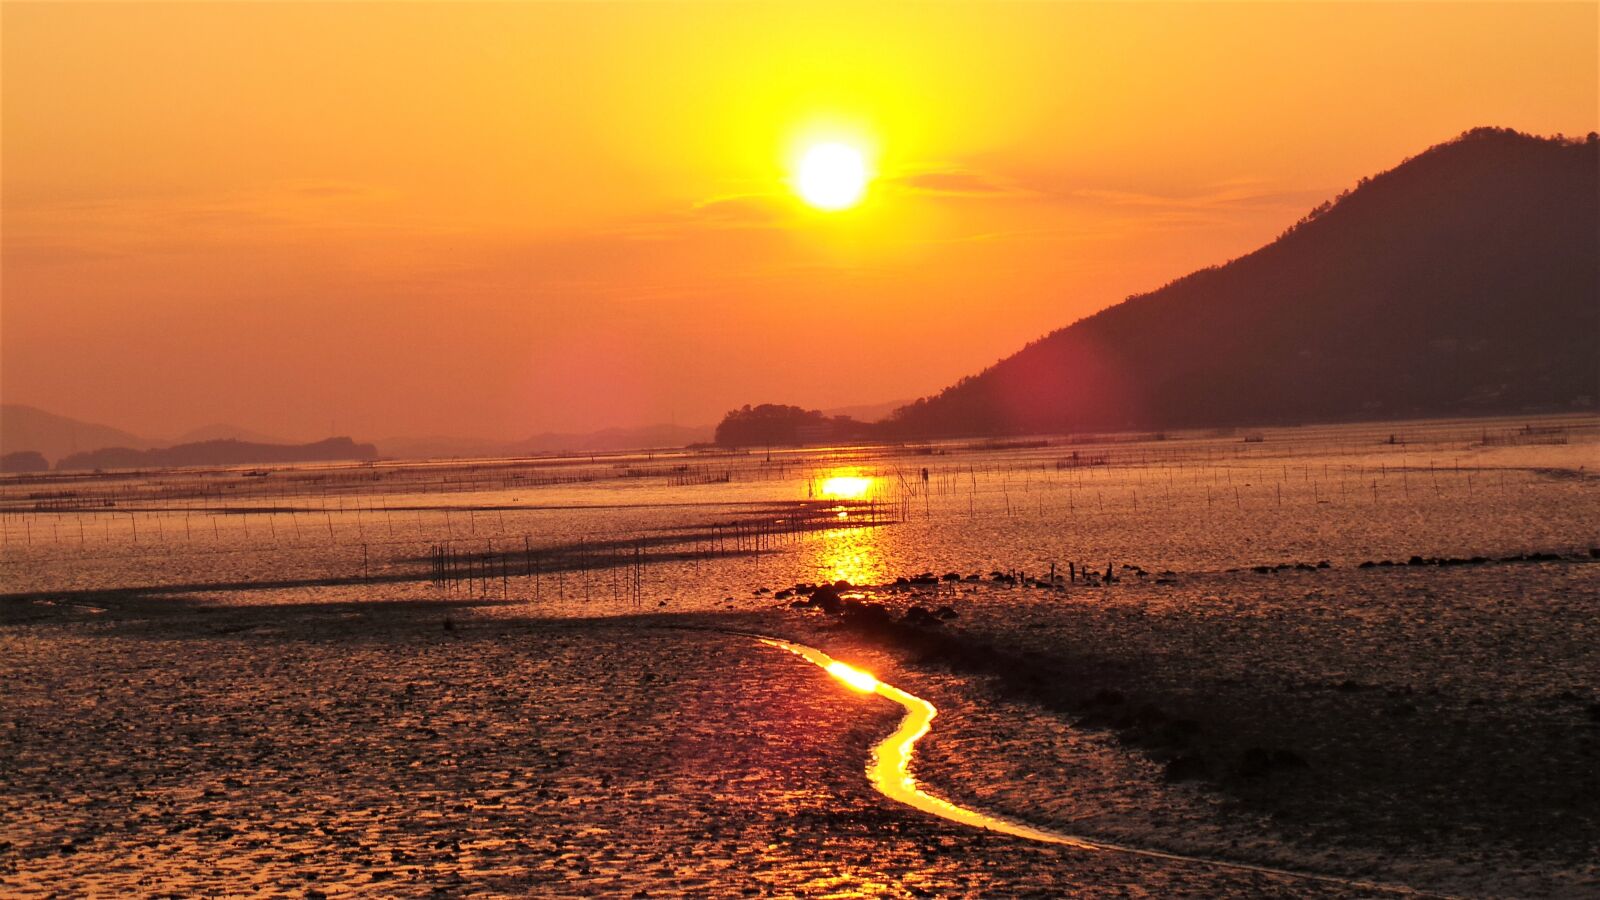 Samsung Galaxy Camera (Wi-Fi) sample photo. Sunset, glow, suncheon bay photography